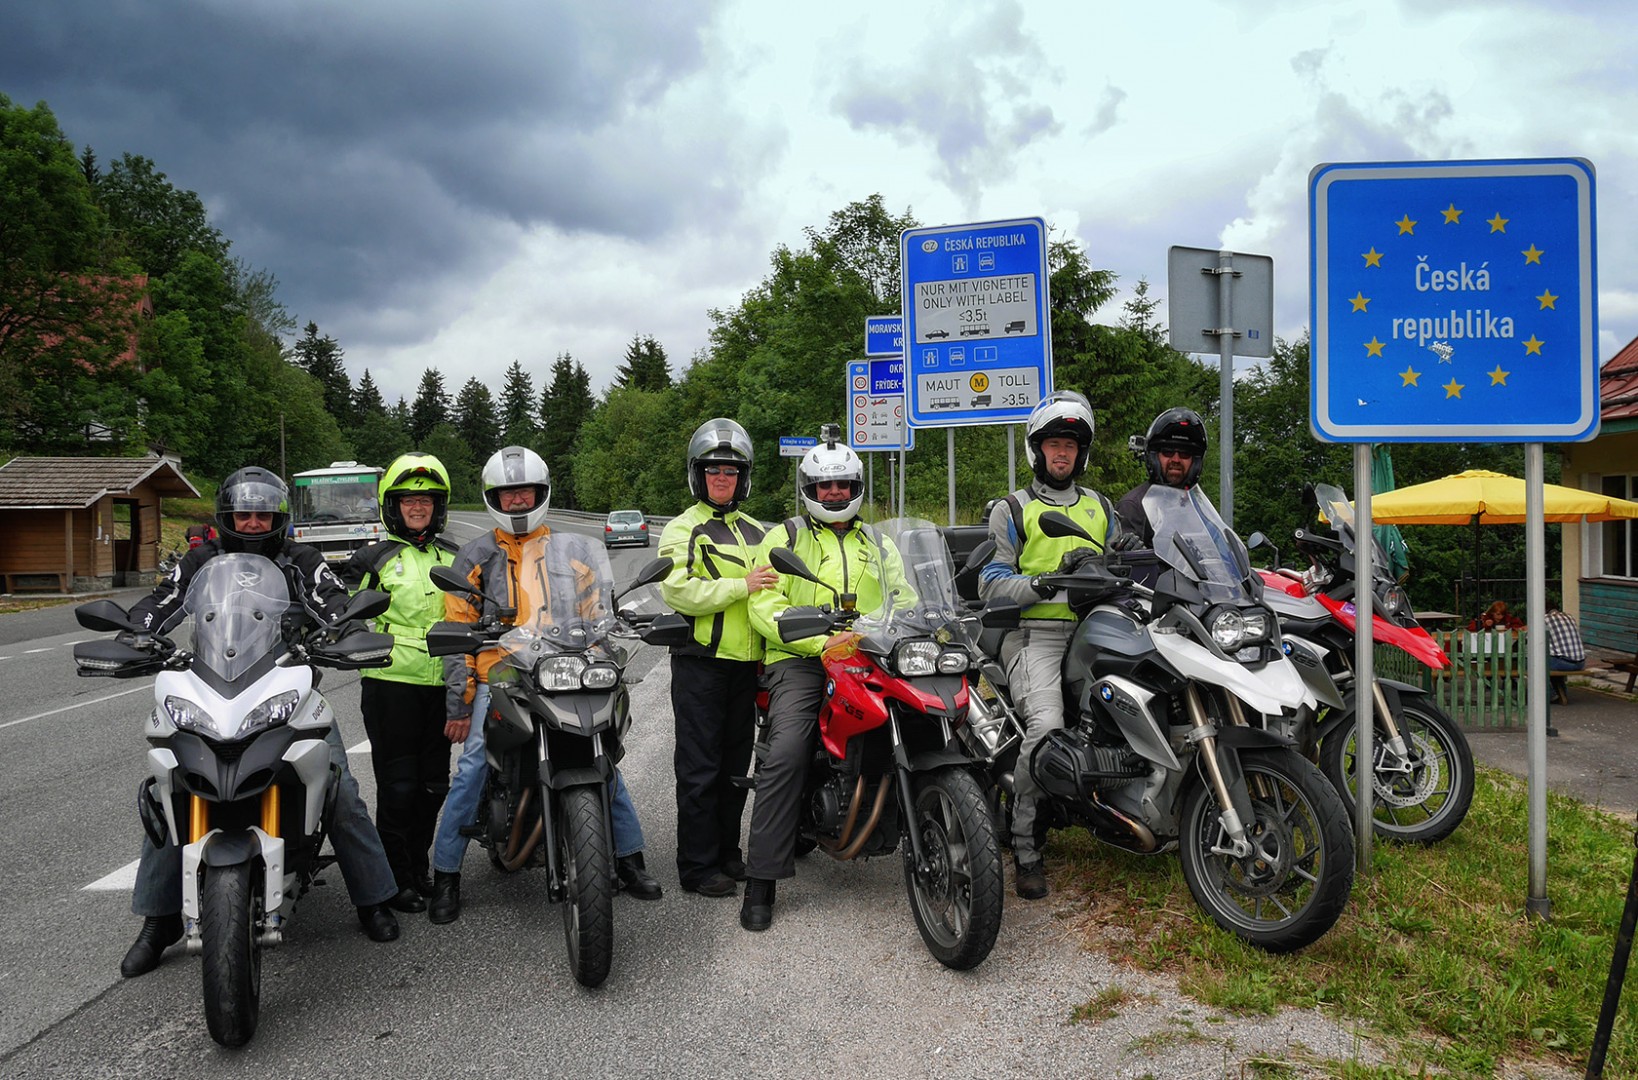 Ruta En Moto Republica Checa y Hungría